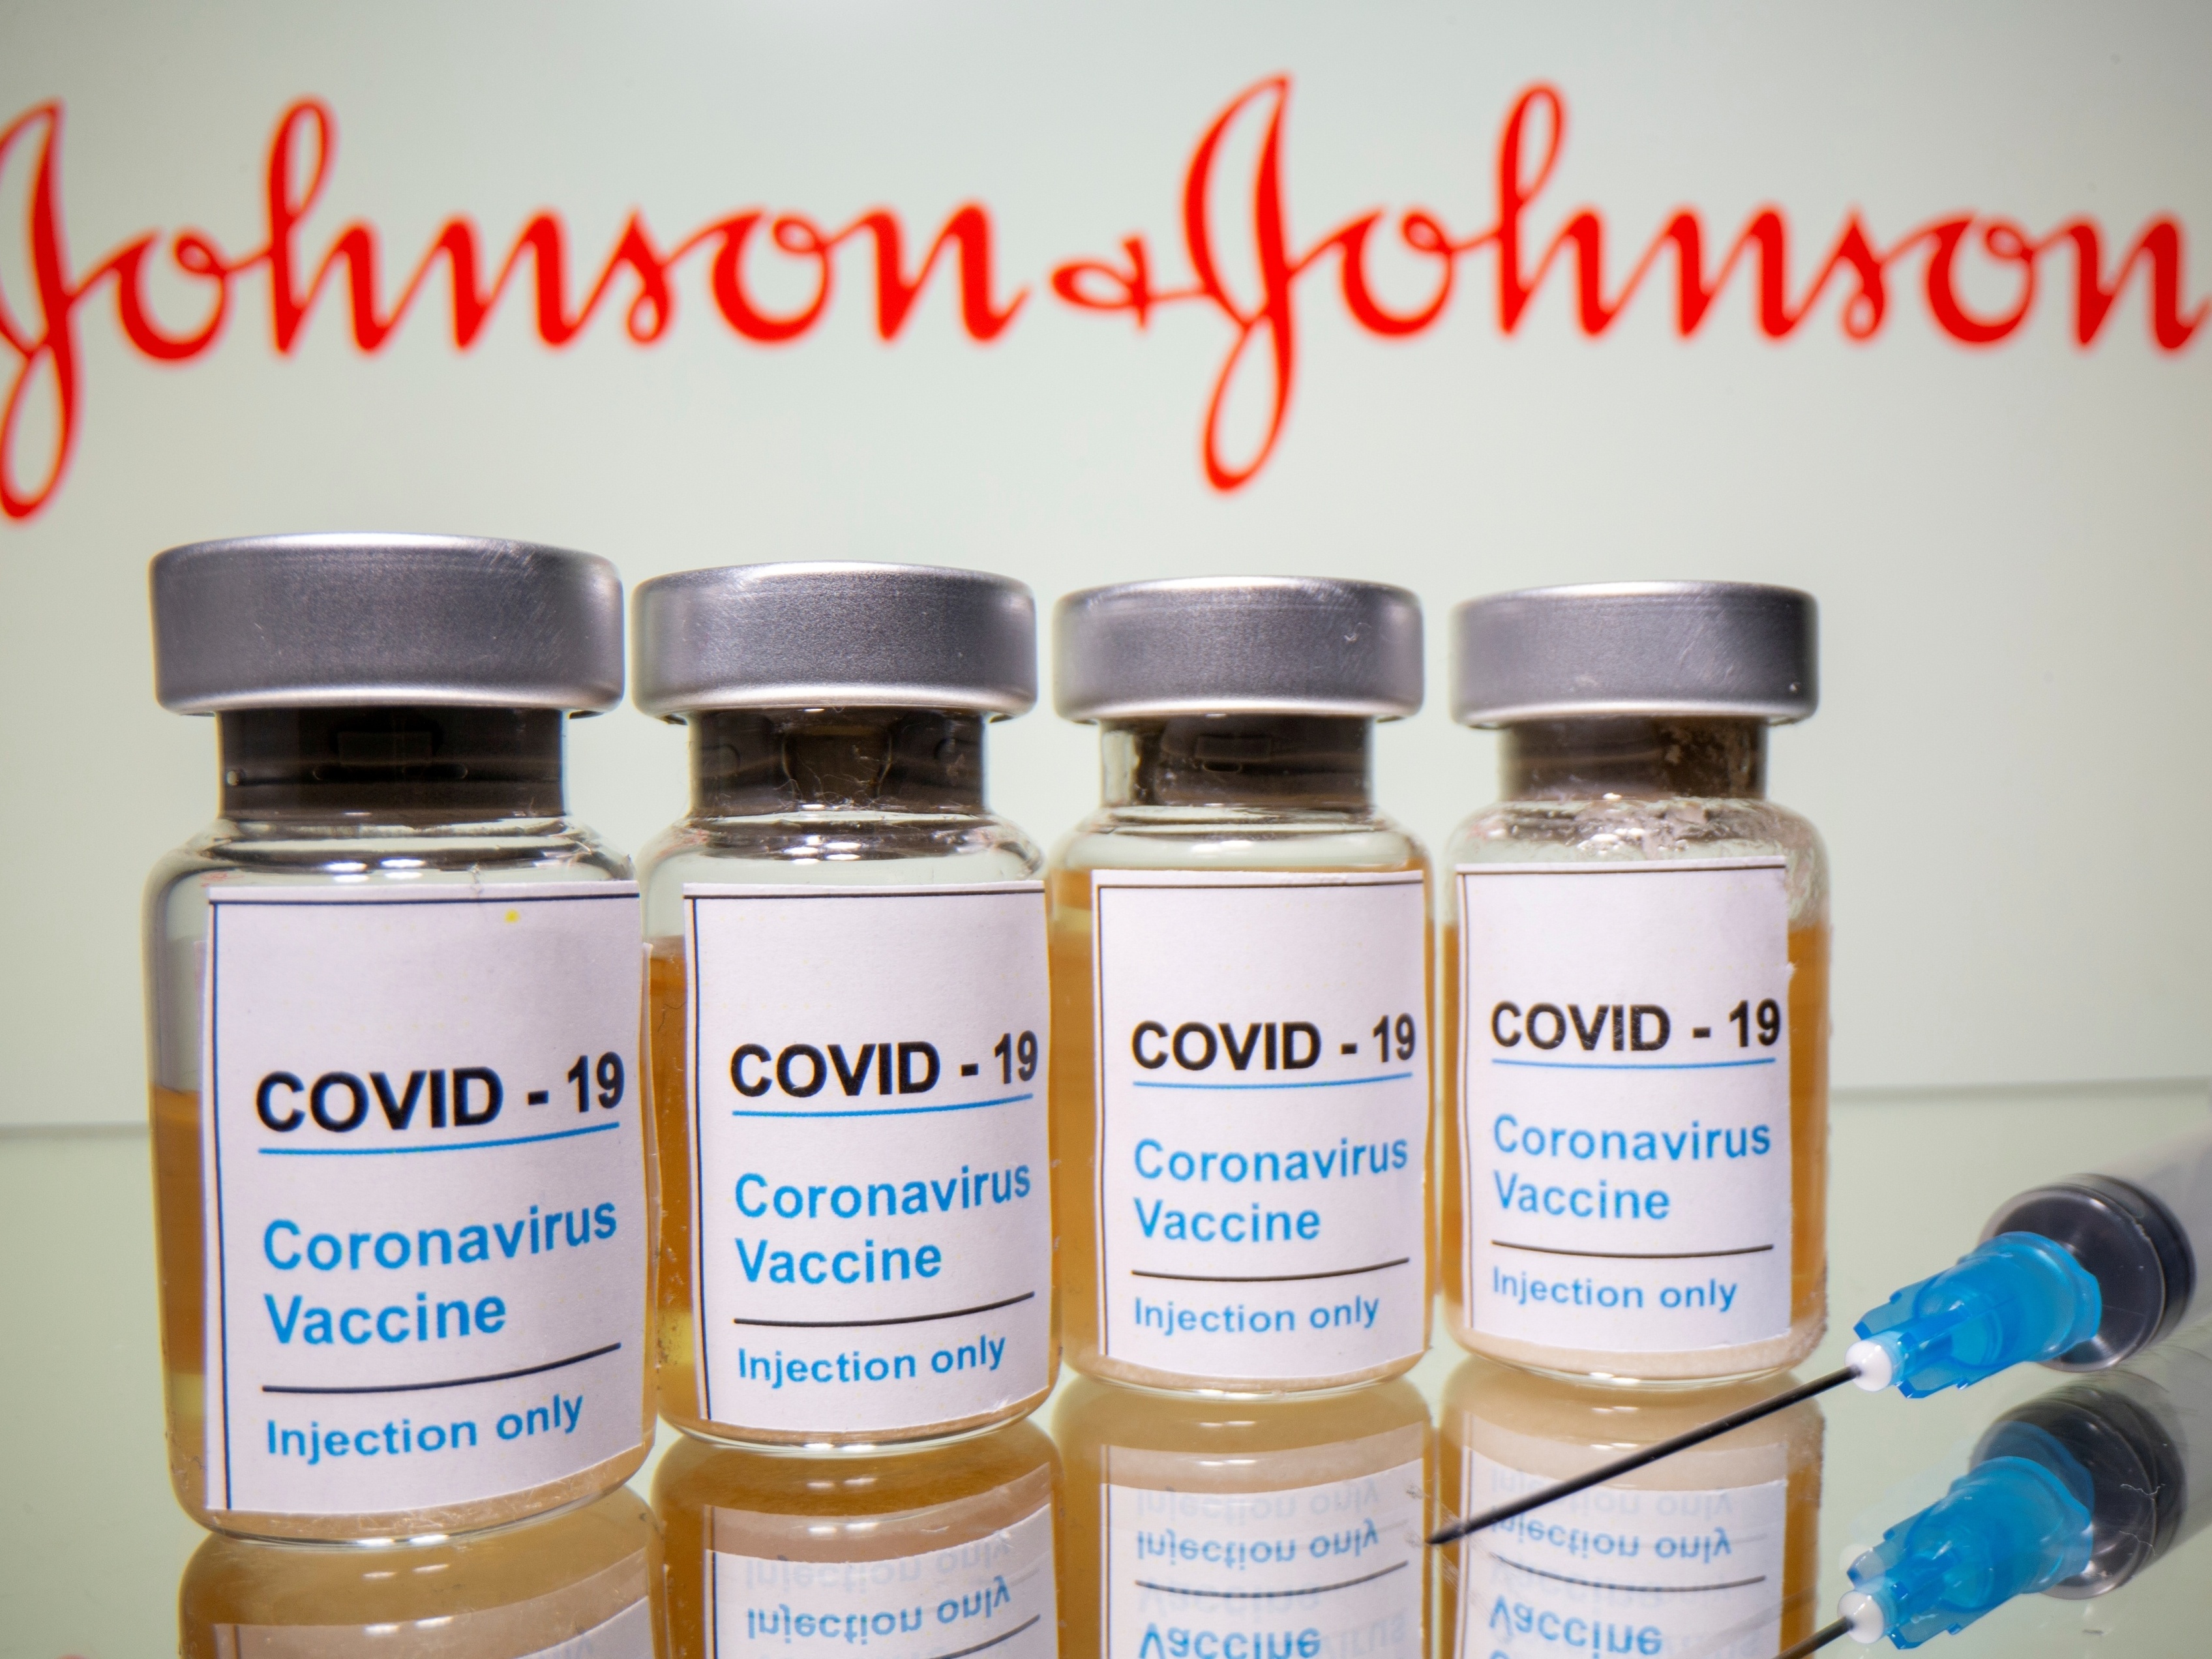 Johnson & Johnson: Gigante da saúde anuncia divisão em duas empresas